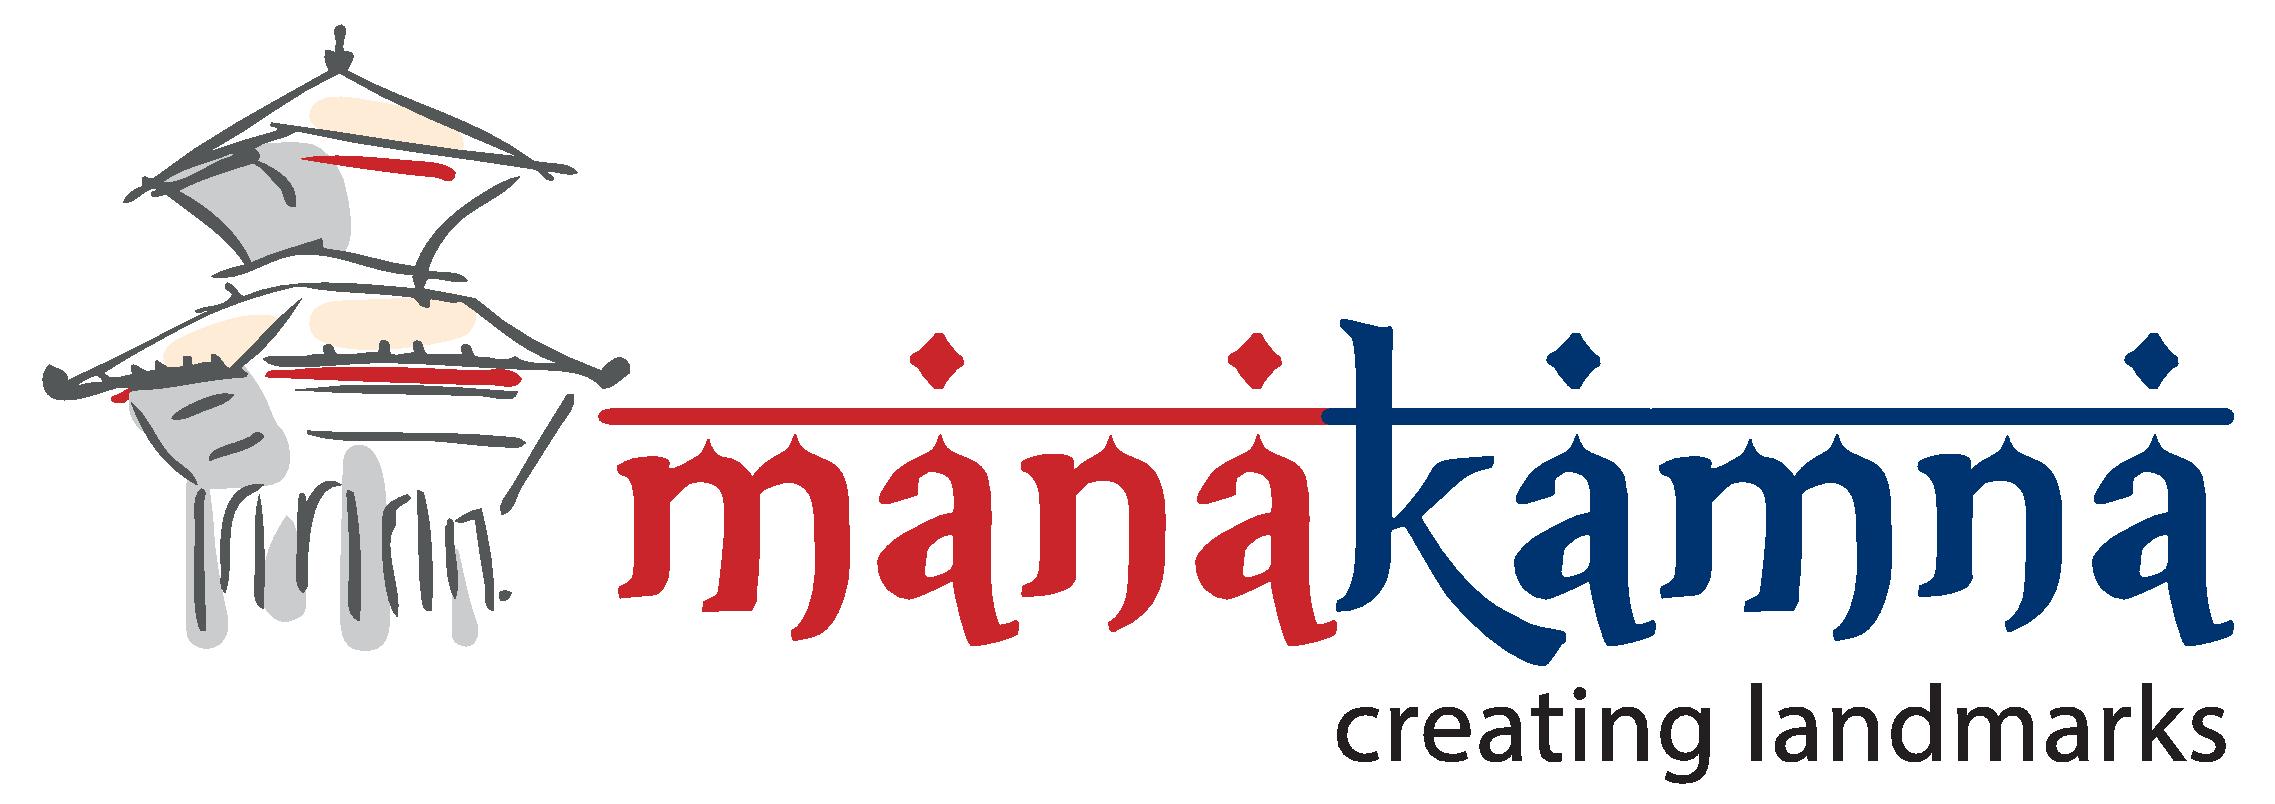 Manakamna 